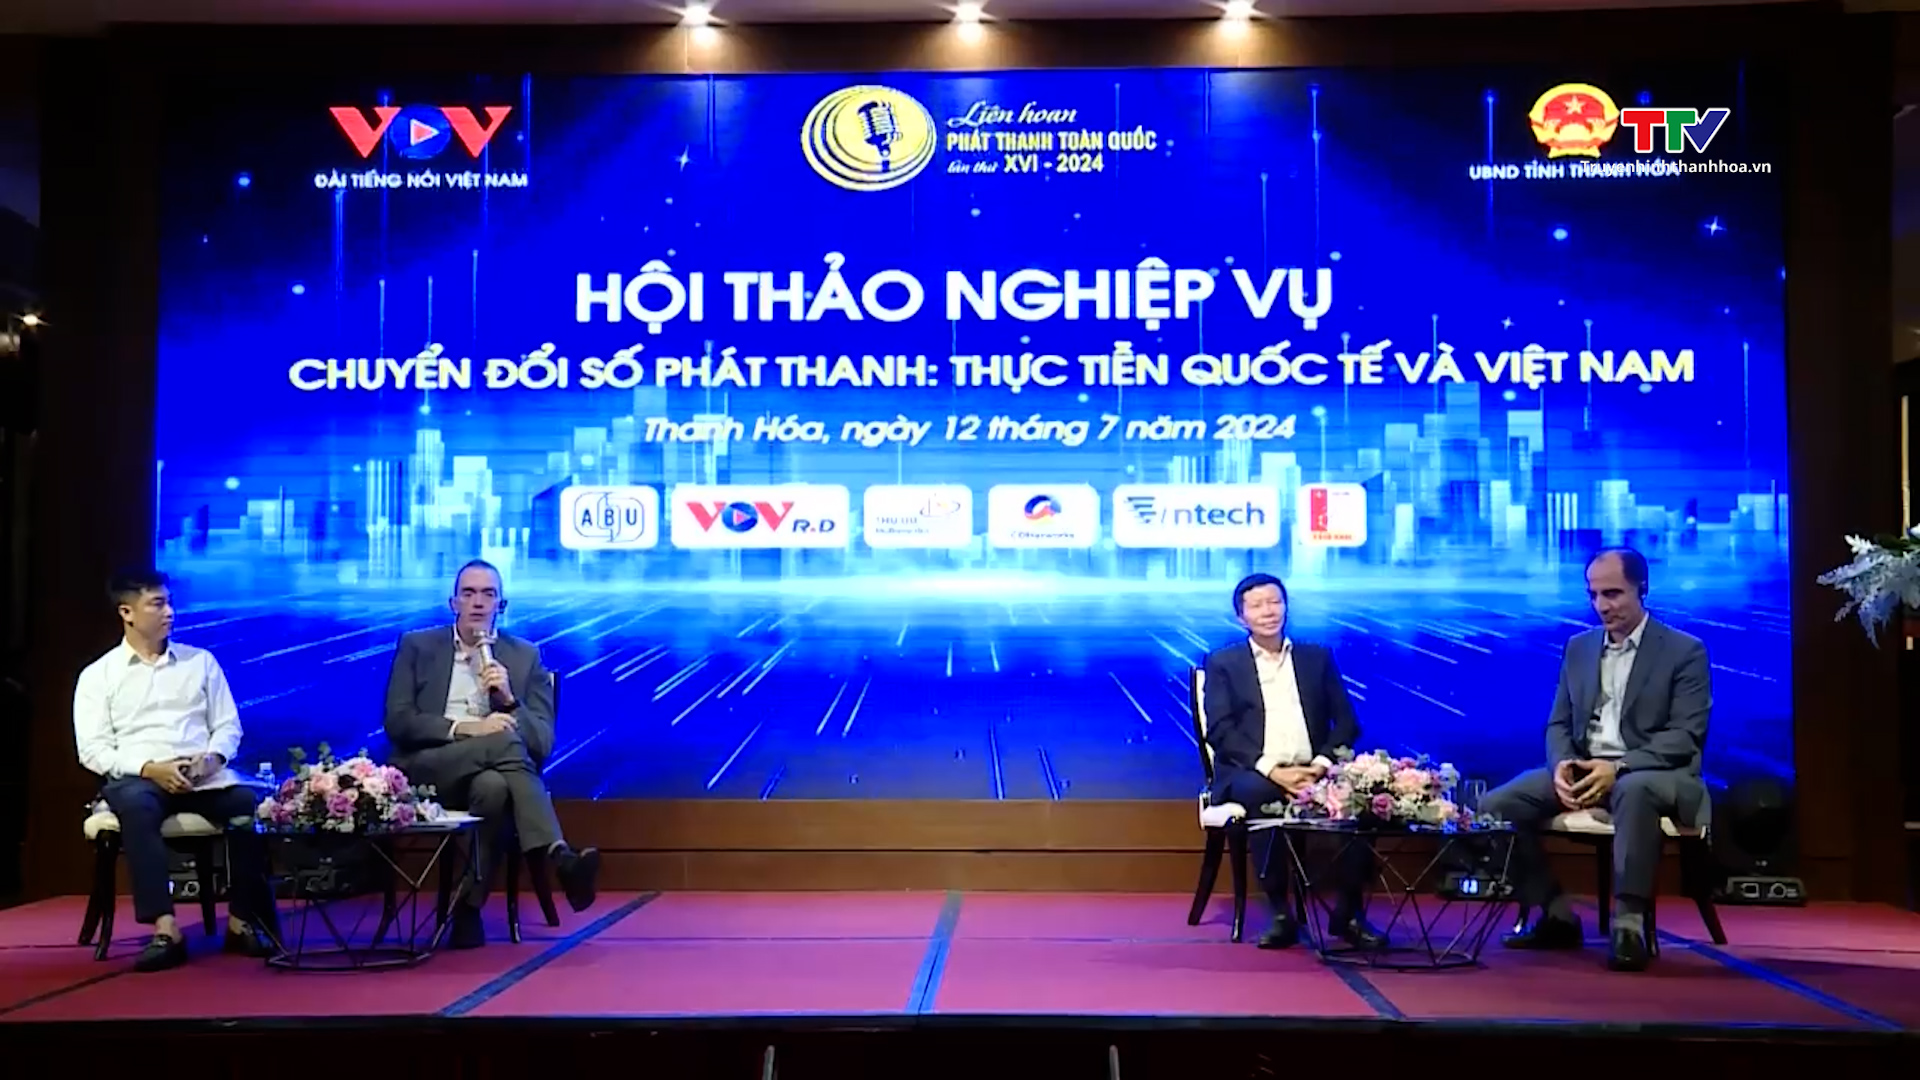 Chuyển đổi số phát thanh: Thực tiễn quốc tế và Việt Nam- Ảnh 4.